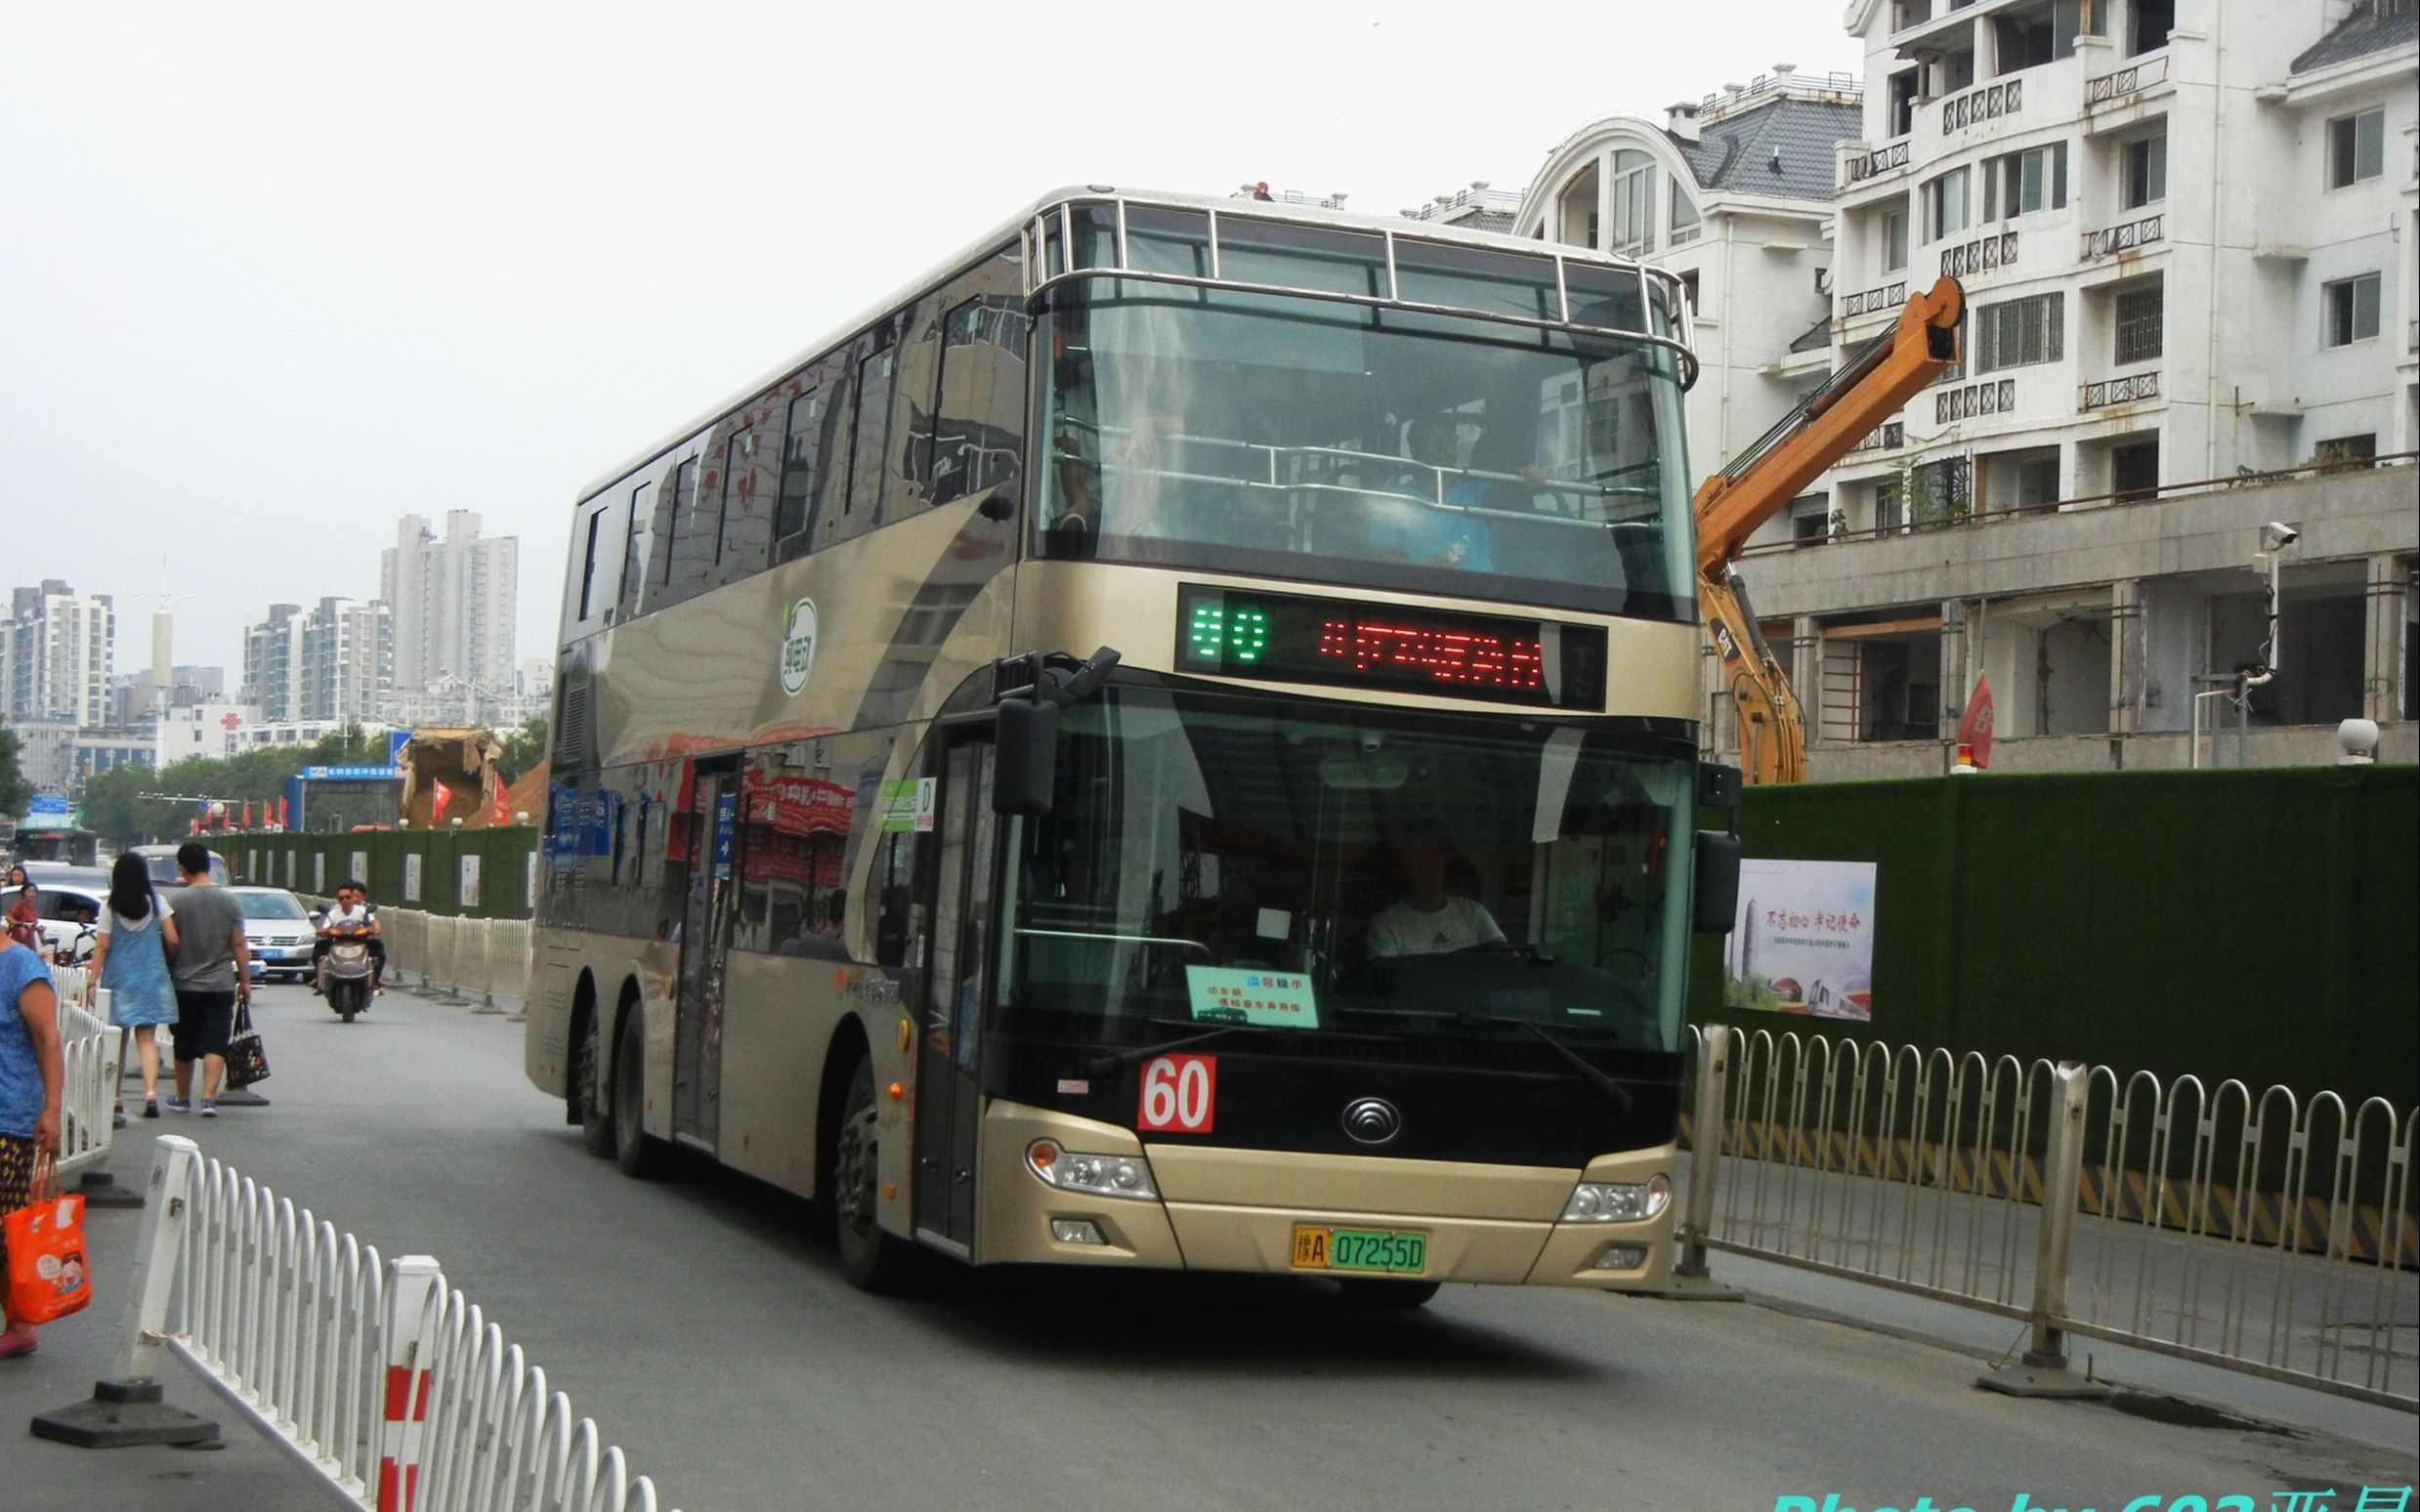 【20201004】郑州公交60路双层巴士前方视角延时摄影视频